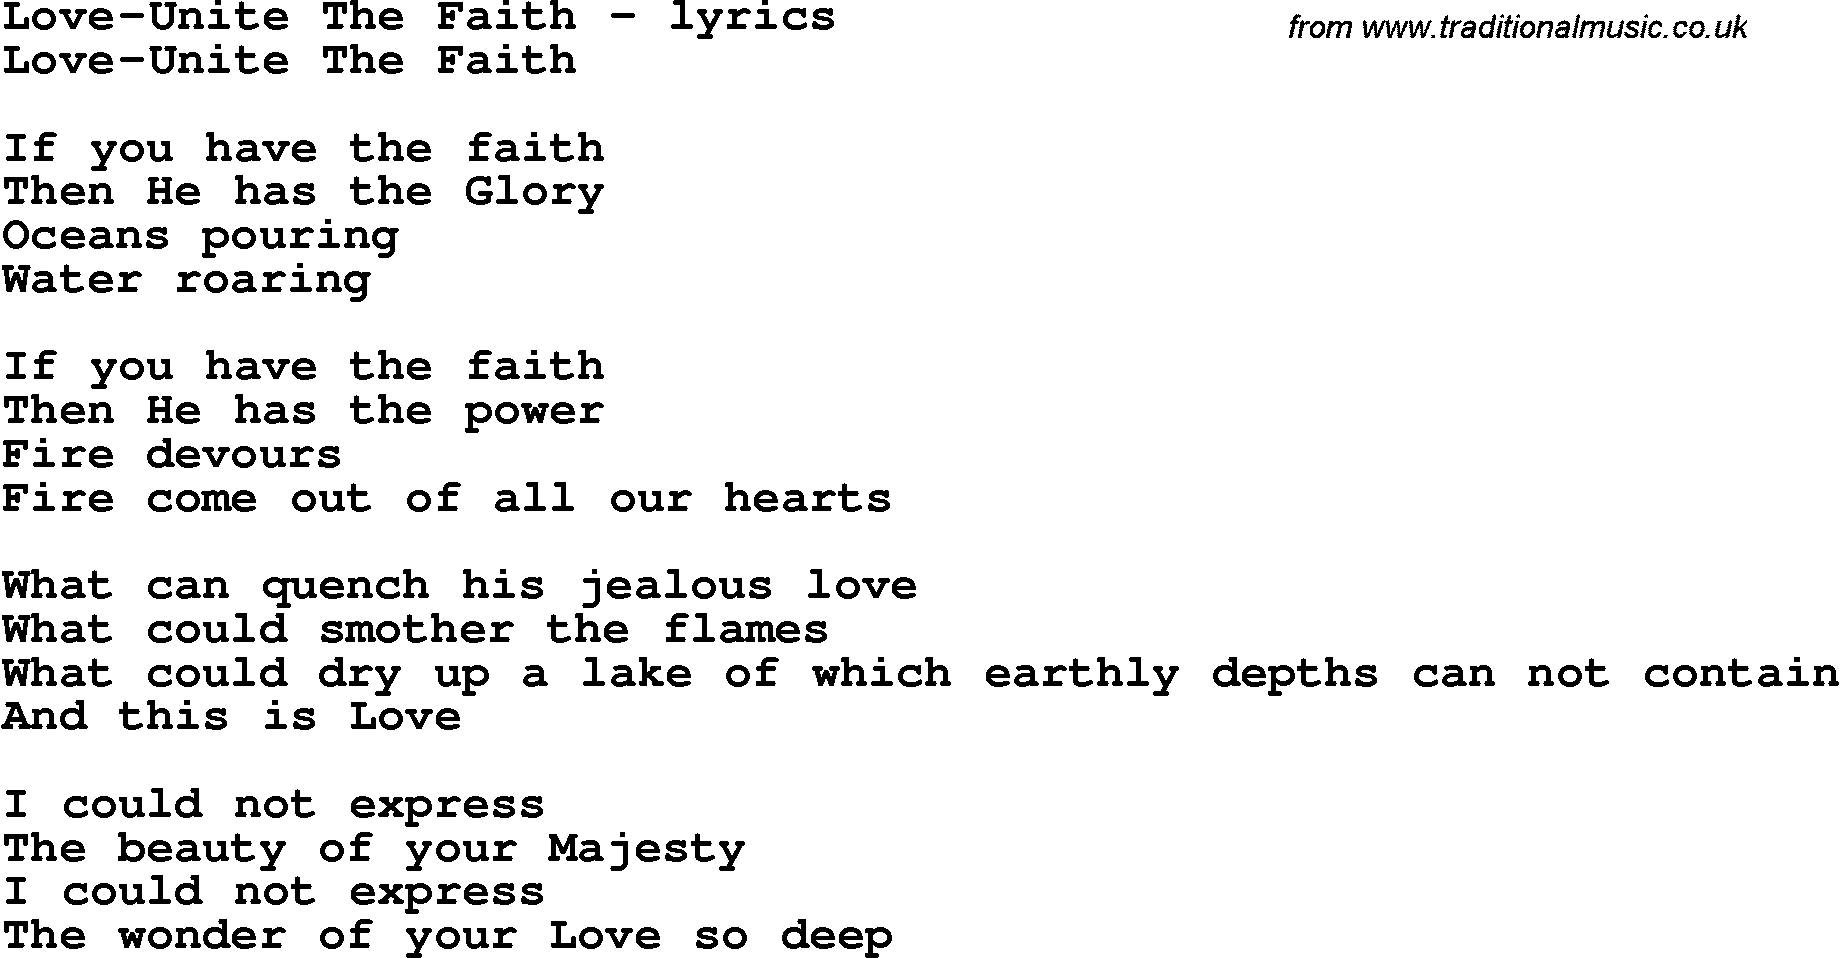 Love Song Lyrics for: Love-Unite The Faith